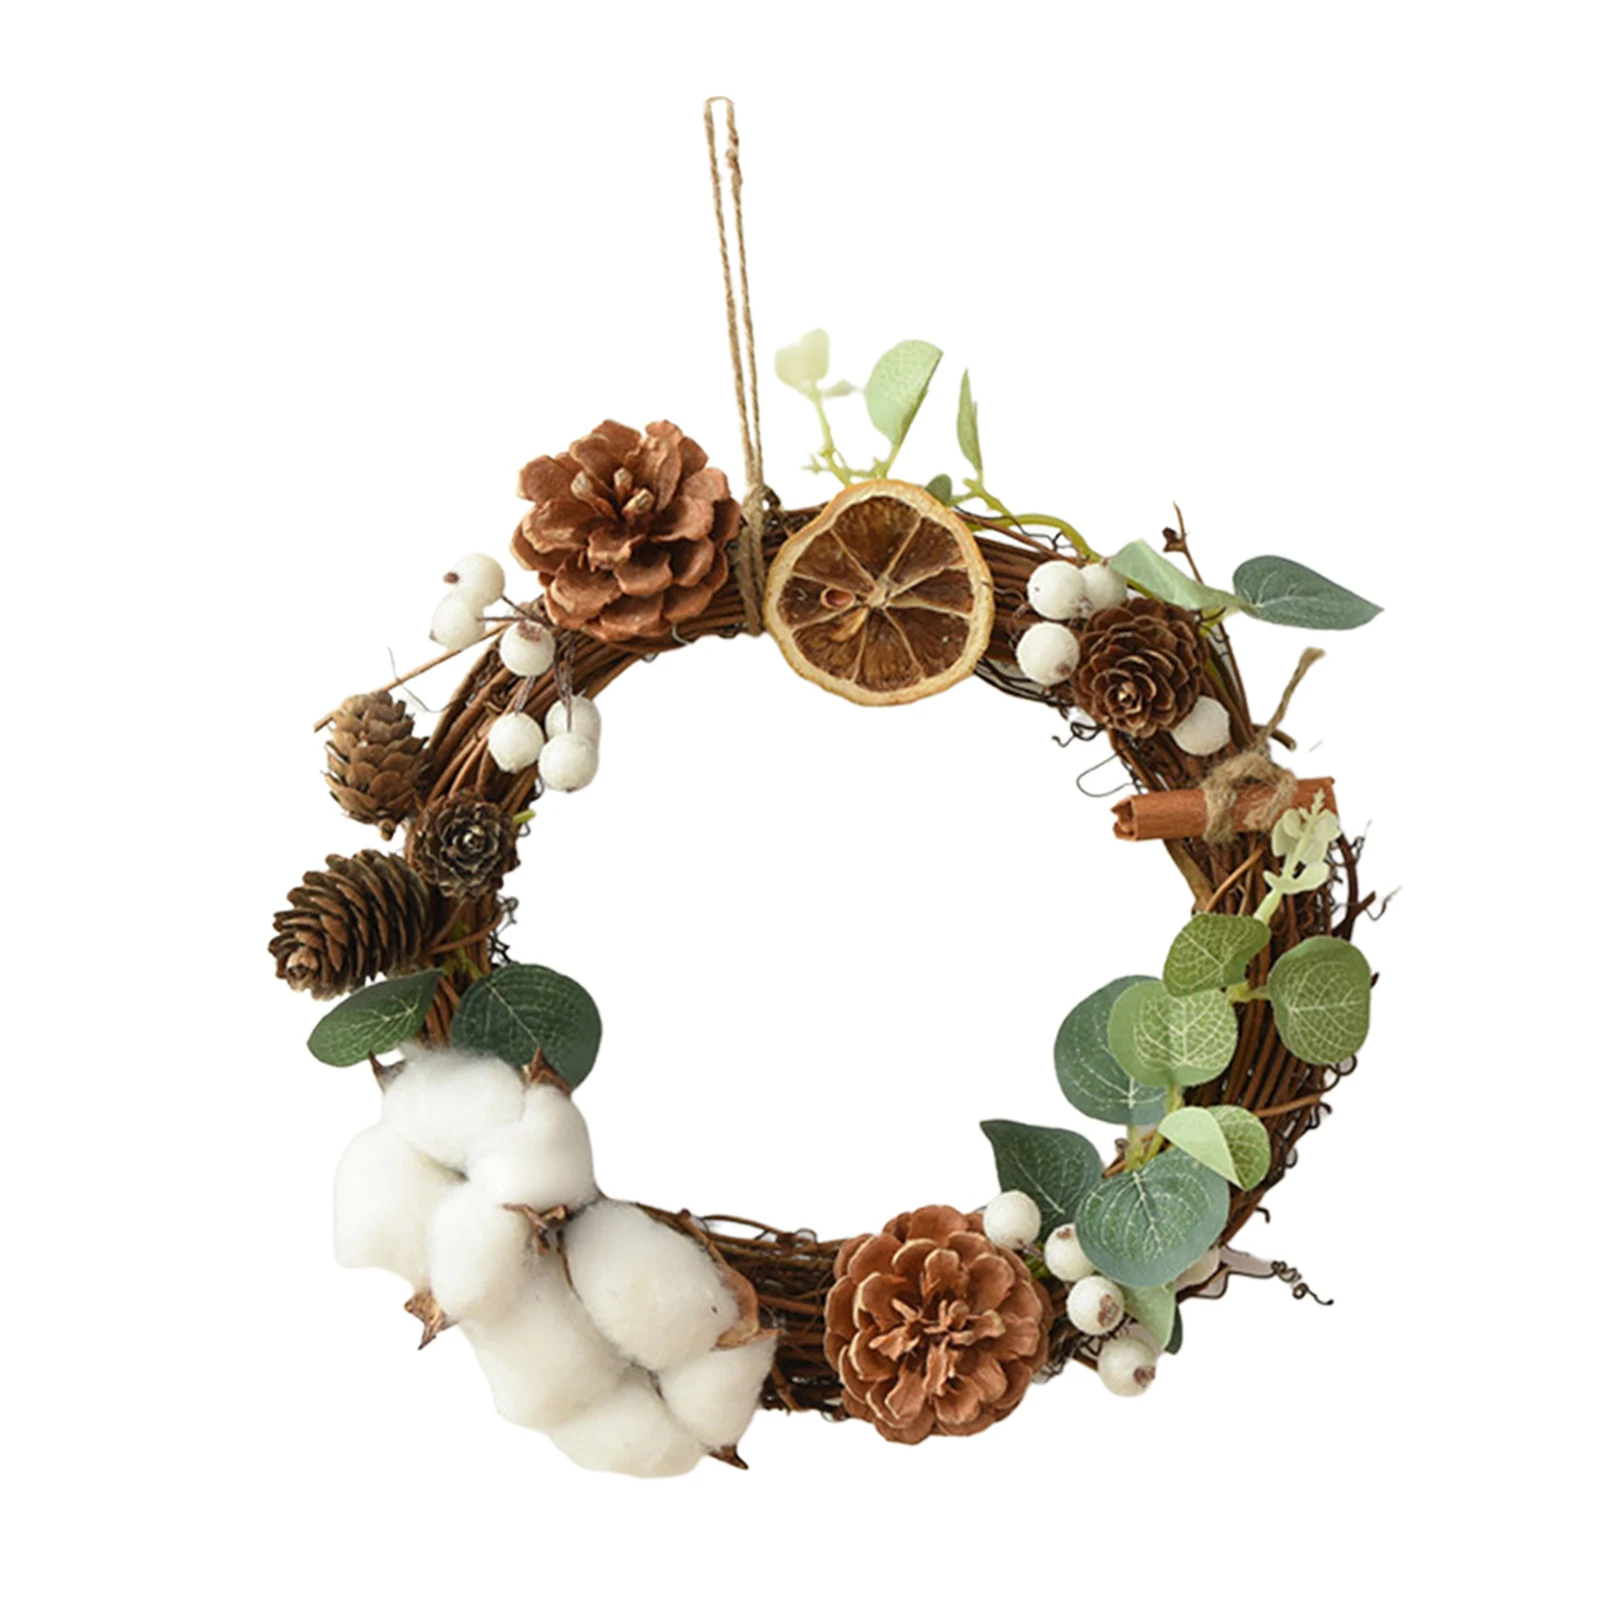 Hanging 8inch Mini Pinecones Dried Flower Garland Ornament Decorative for Front Door Outdoor Bedroom Headboard Wedding